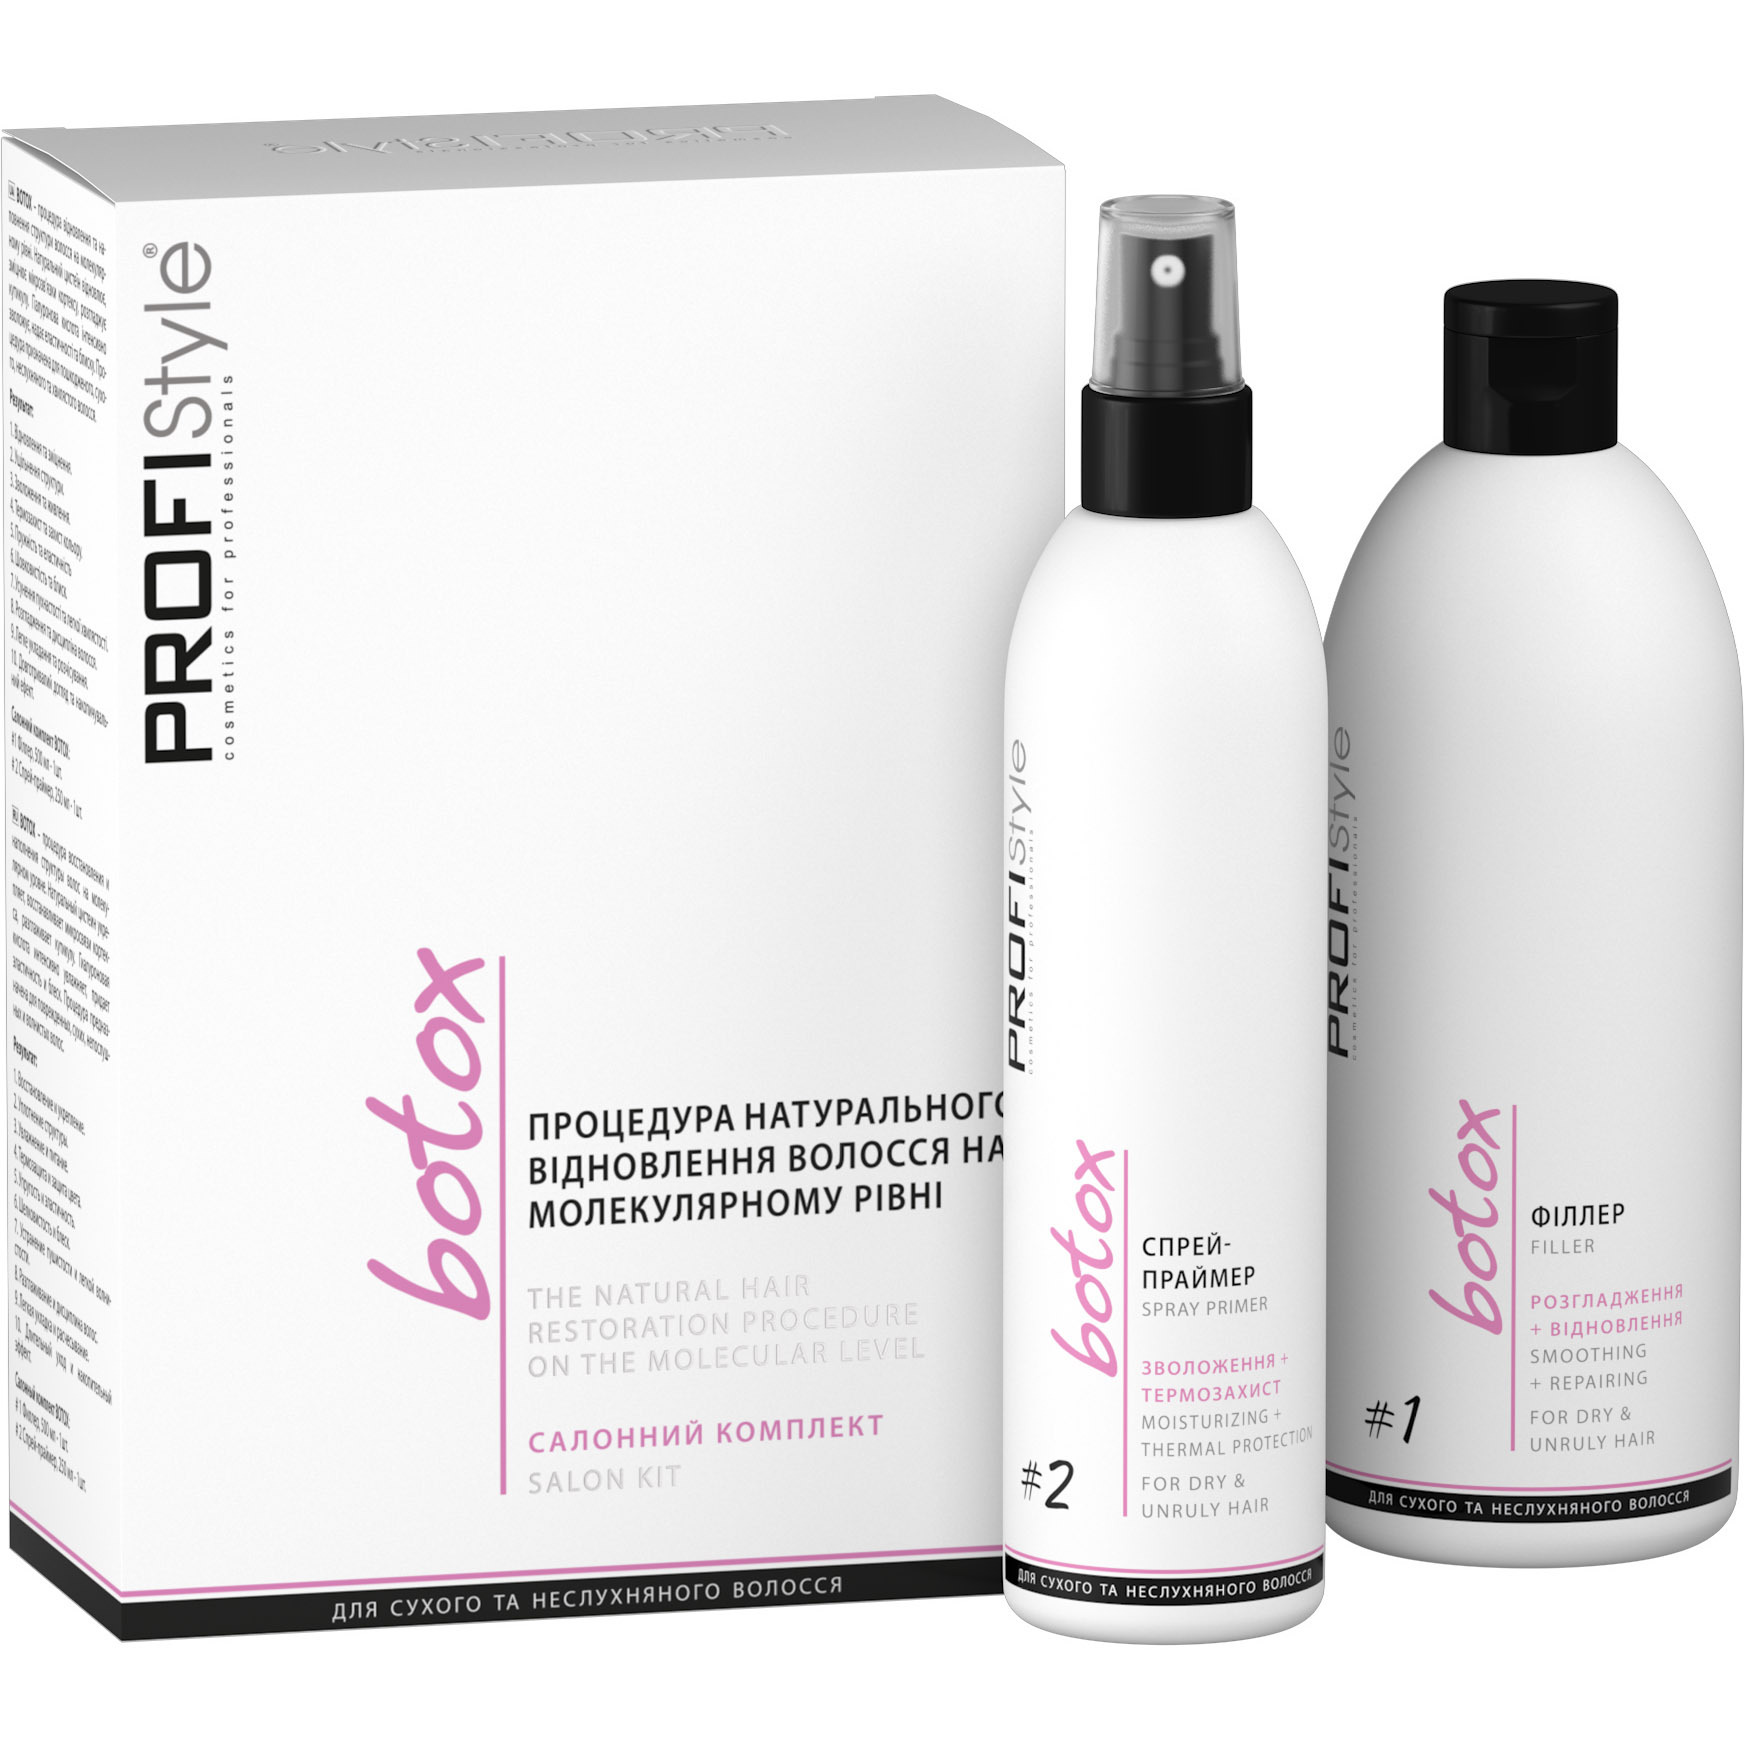 Салонный комплект: процедура натурального обновления волос на молекулярном уровне ProfiStyle Botox филлер №1 500 мл + спрей-праймер №2 250 мл - фото 1